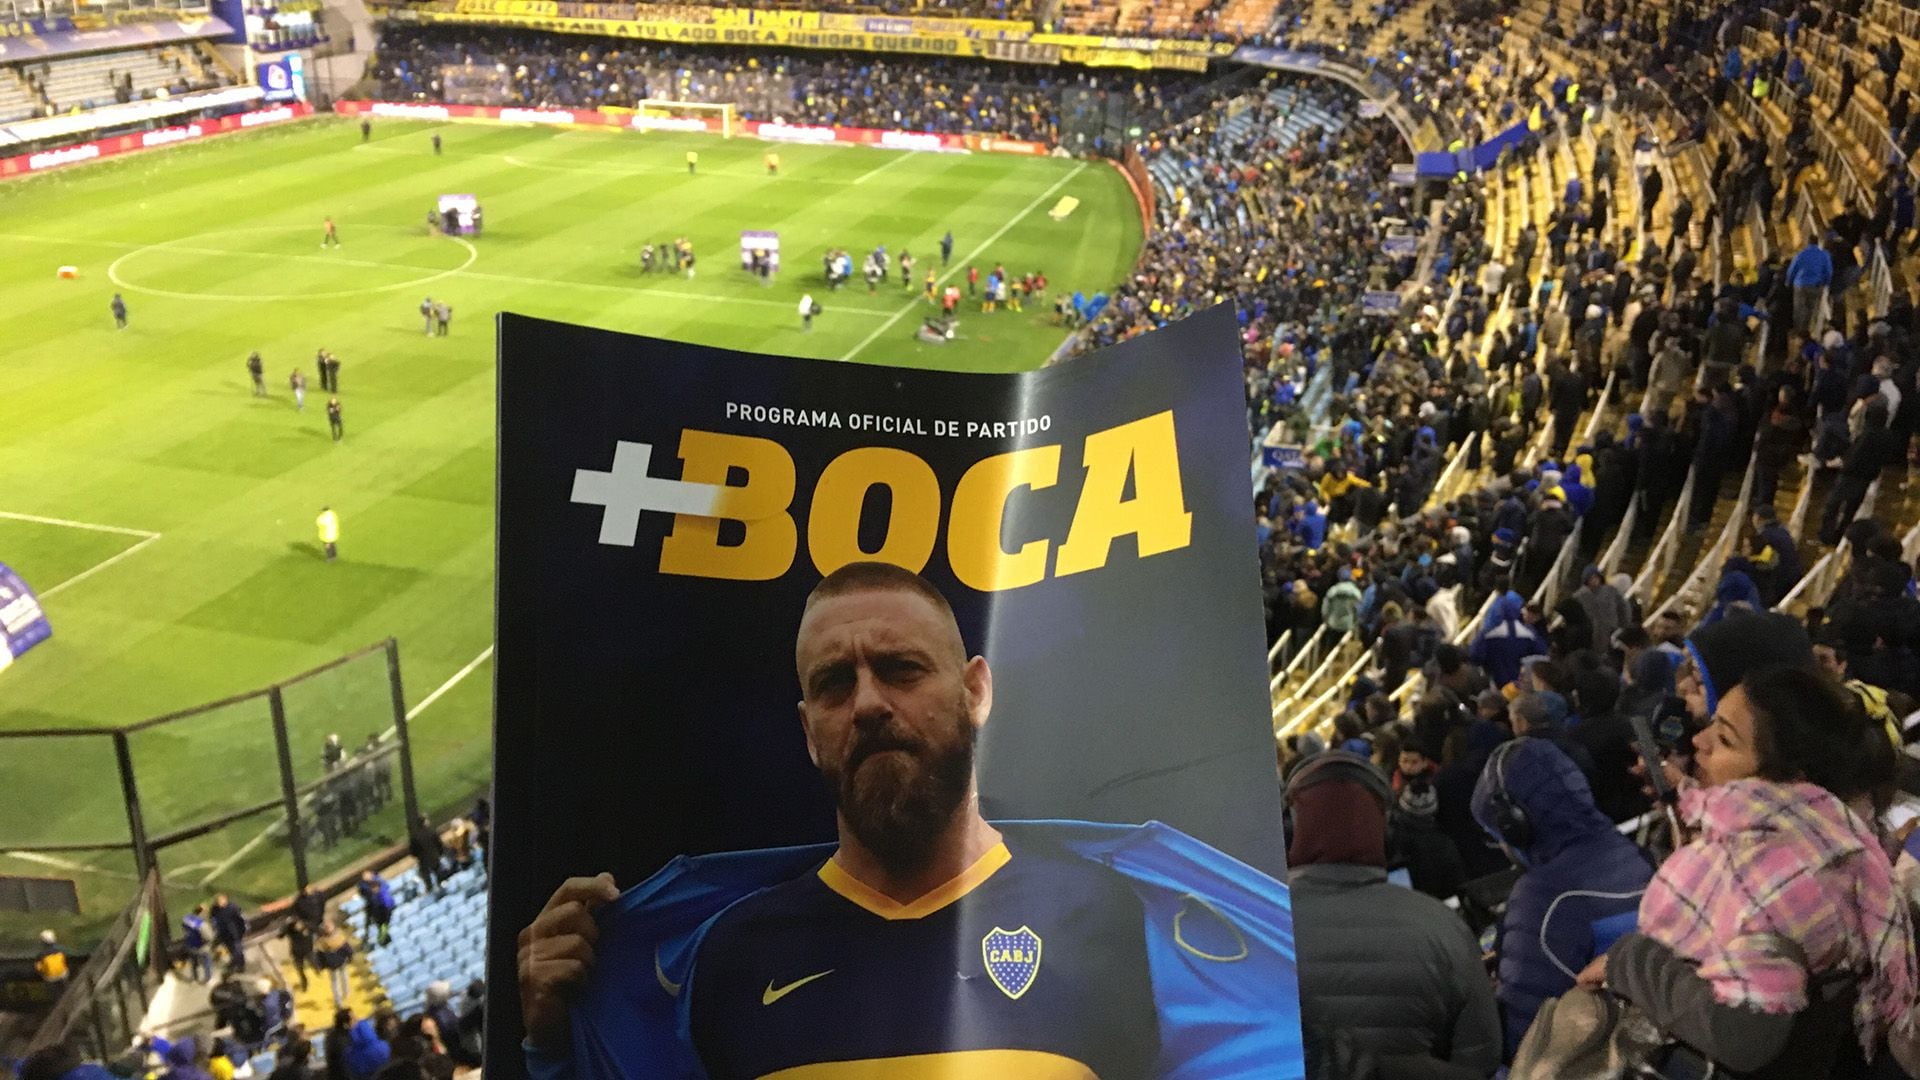 La llegada de Daniele De Rossi a Boca fue un éxito inicial de marketing y venta de camisetas. ¿Por qué duró tan poco?